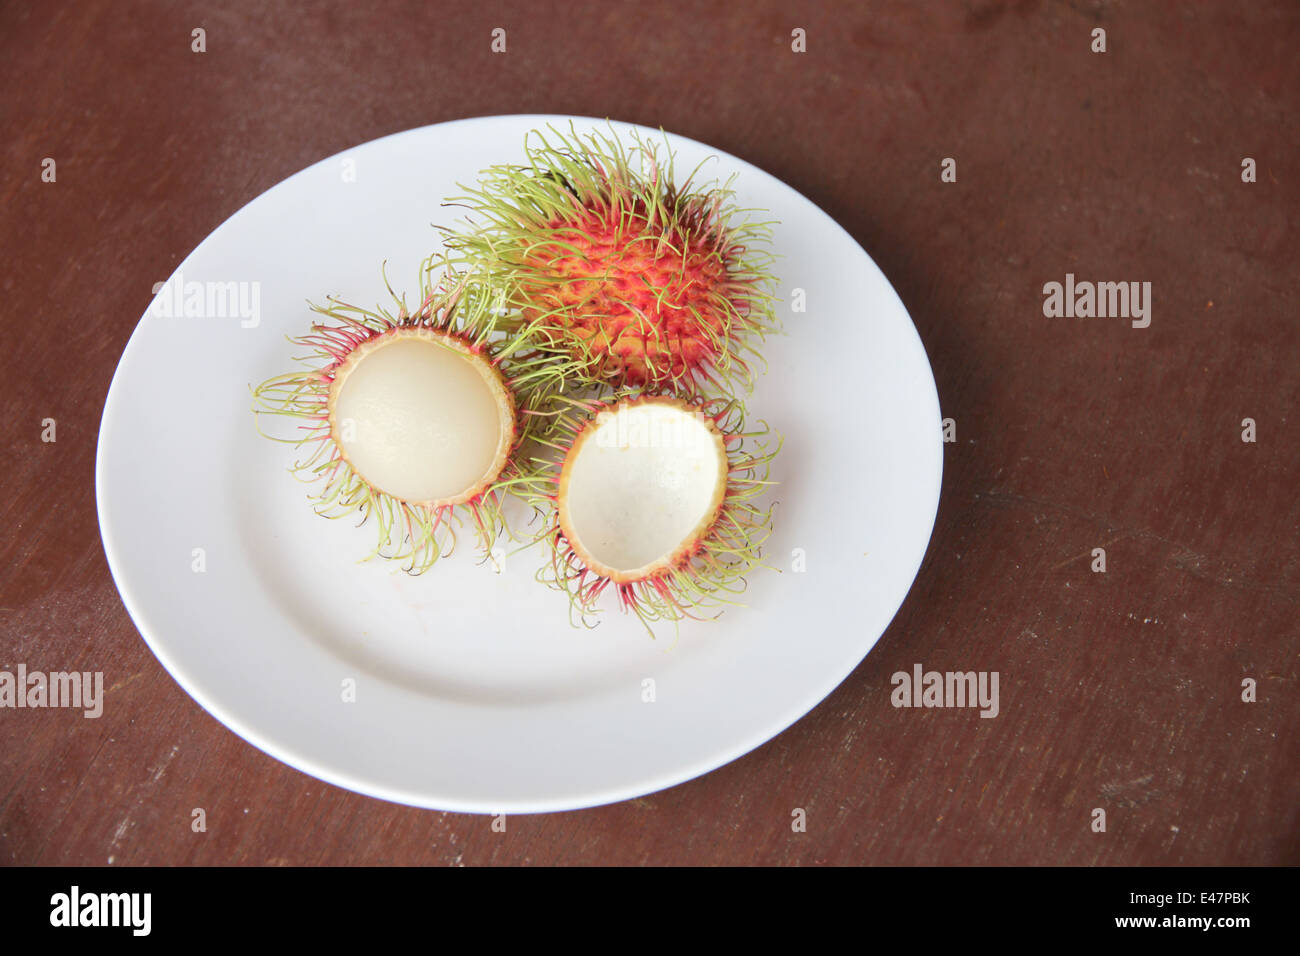 Frische Rambutan Früchte schälen in Schale auf der Lebensmittel-Tabelle. Stockfoto